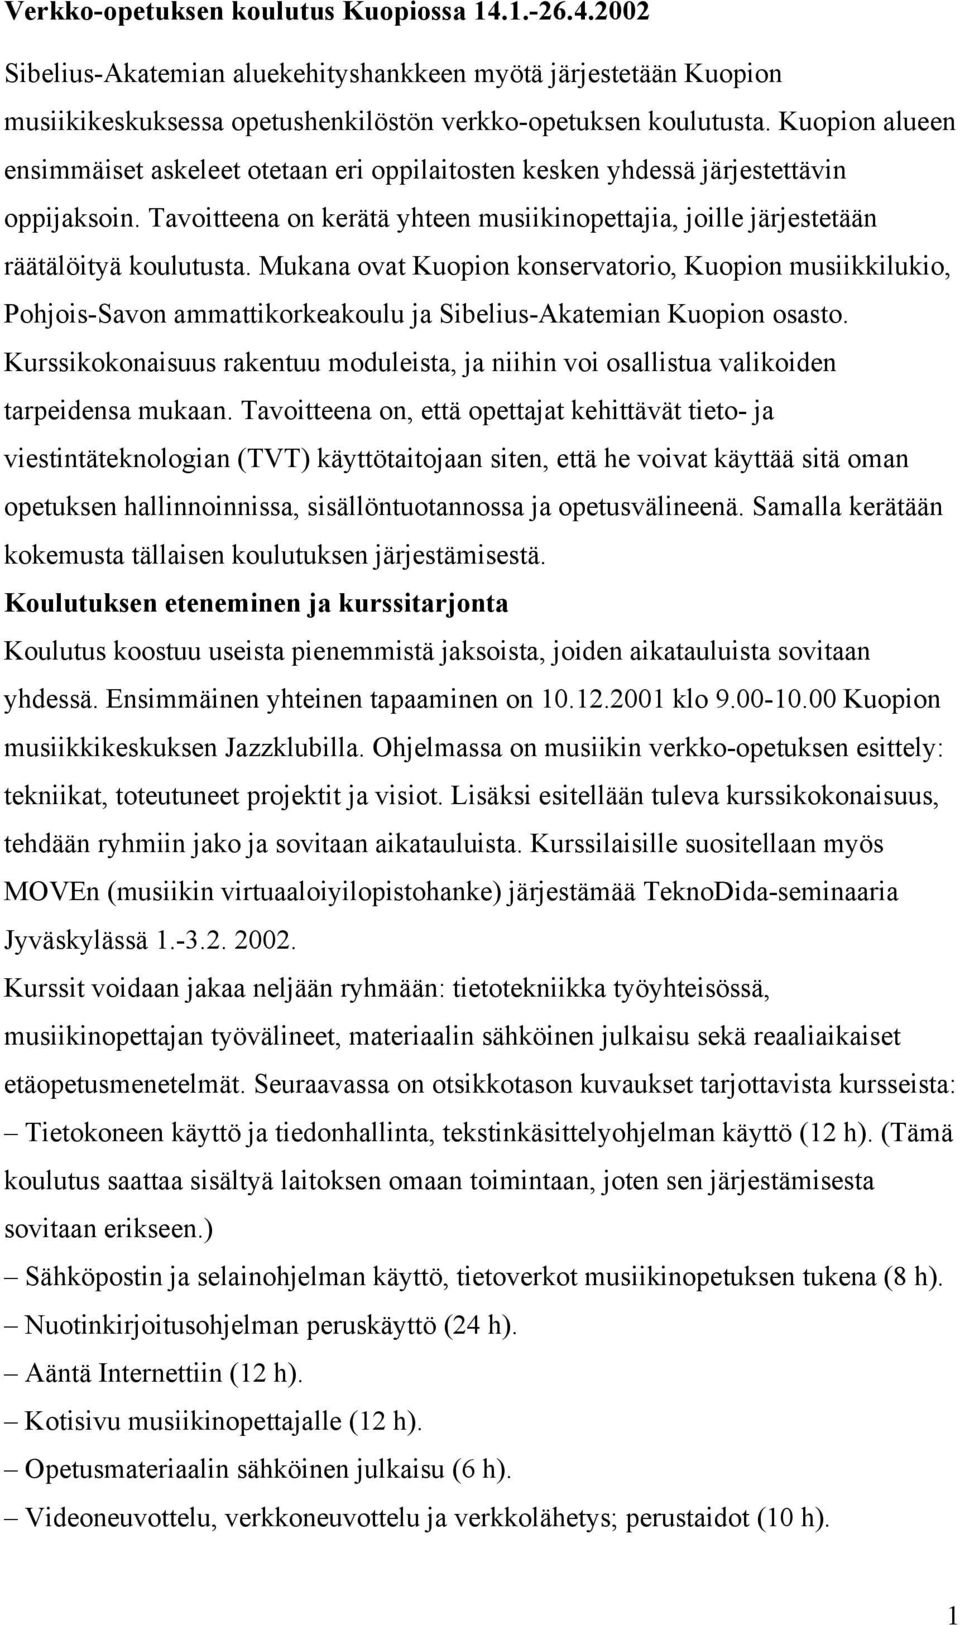 Mukana ovat Kuopion konservatorio, Kuopion musiikkilukio, Pohjois-Savon ammattikorkeakoulu ja Sibelius-Akatemian Kuopion osasto.